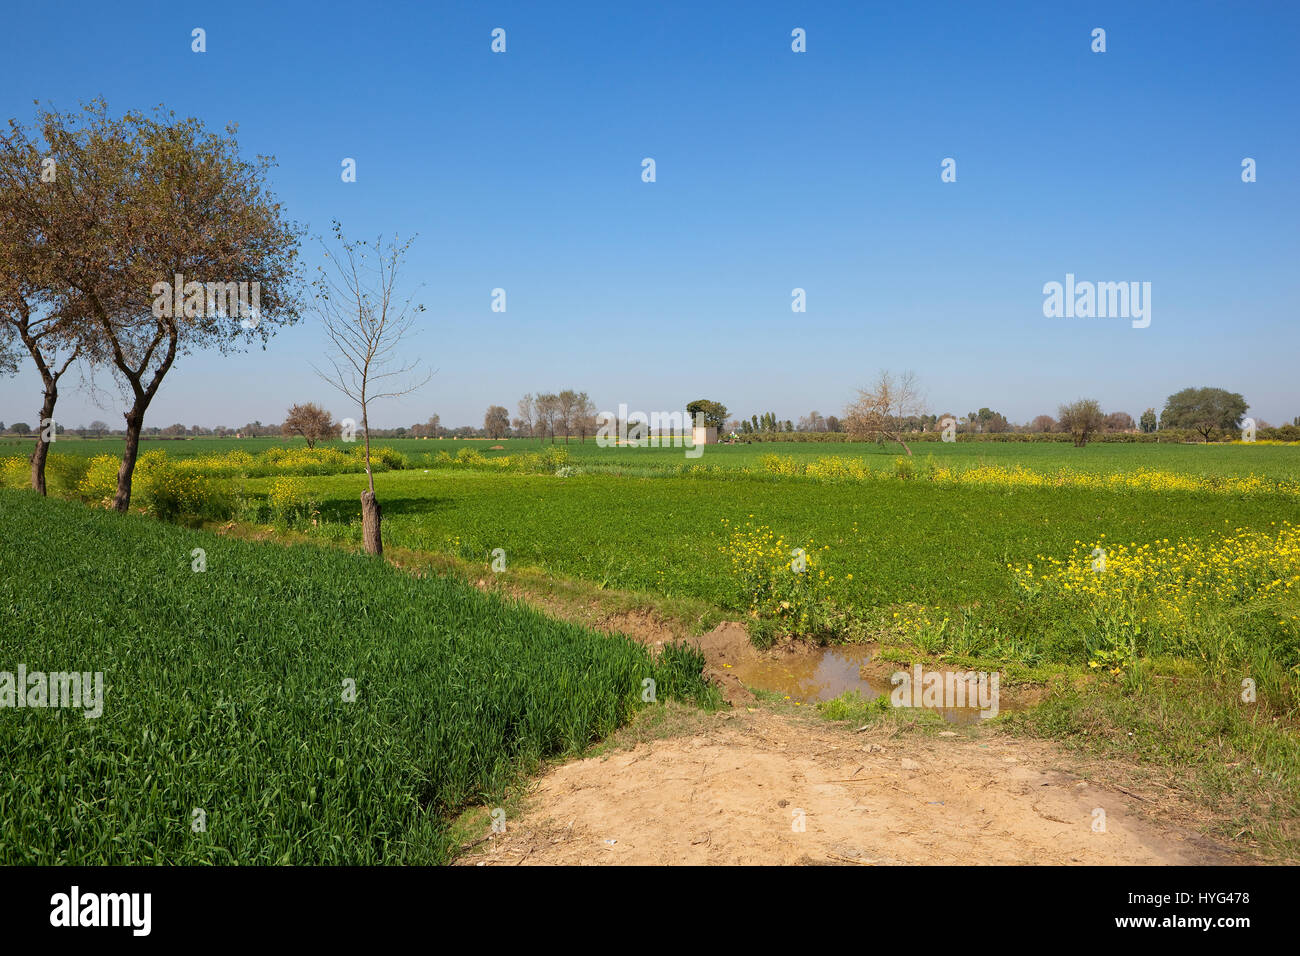 Weizen-gelbe Blüte Senf und Futter Pflanzen im ländlichen Rajasthan Indien mit Bäumen und Dörfer unter strahlend blauem Himmel Stockfoto